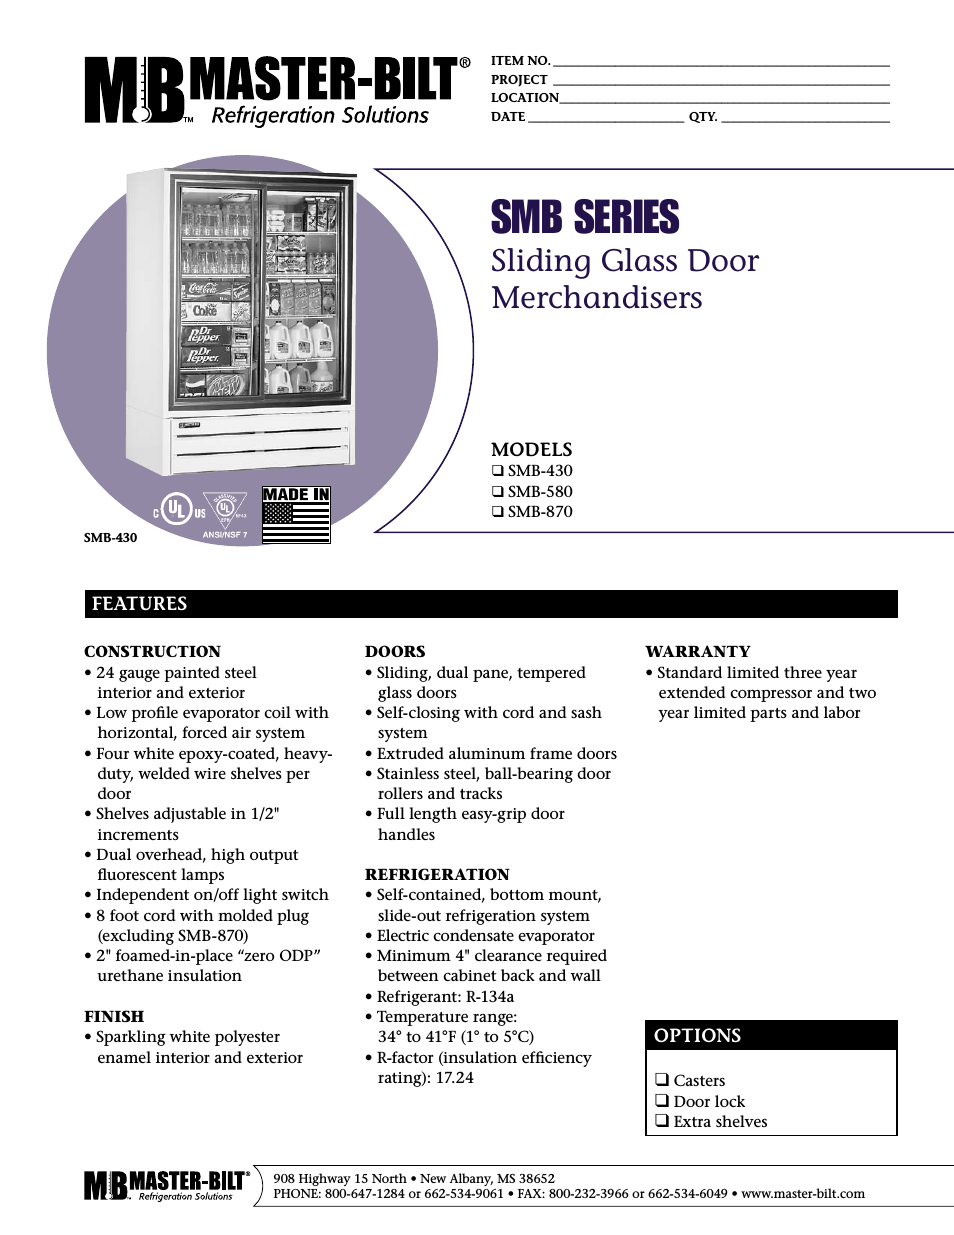 Sliding Glass Door Merchandise SMB-870